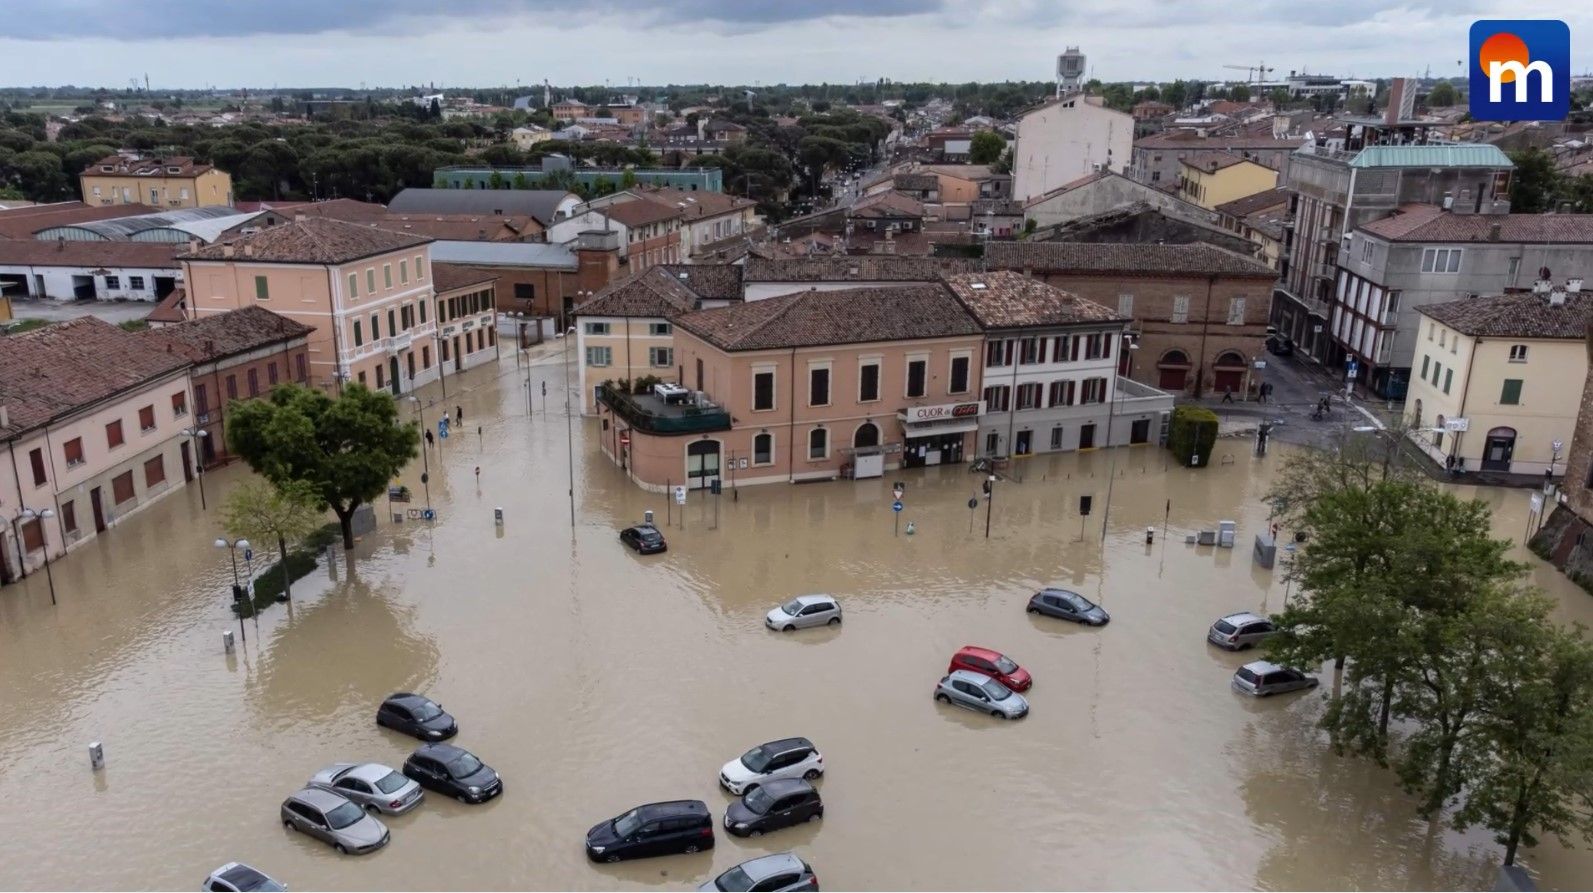 Alluvione in Emilia Romagna, ancora vittime e danni. Continua l’allerta rossa. VIDEO